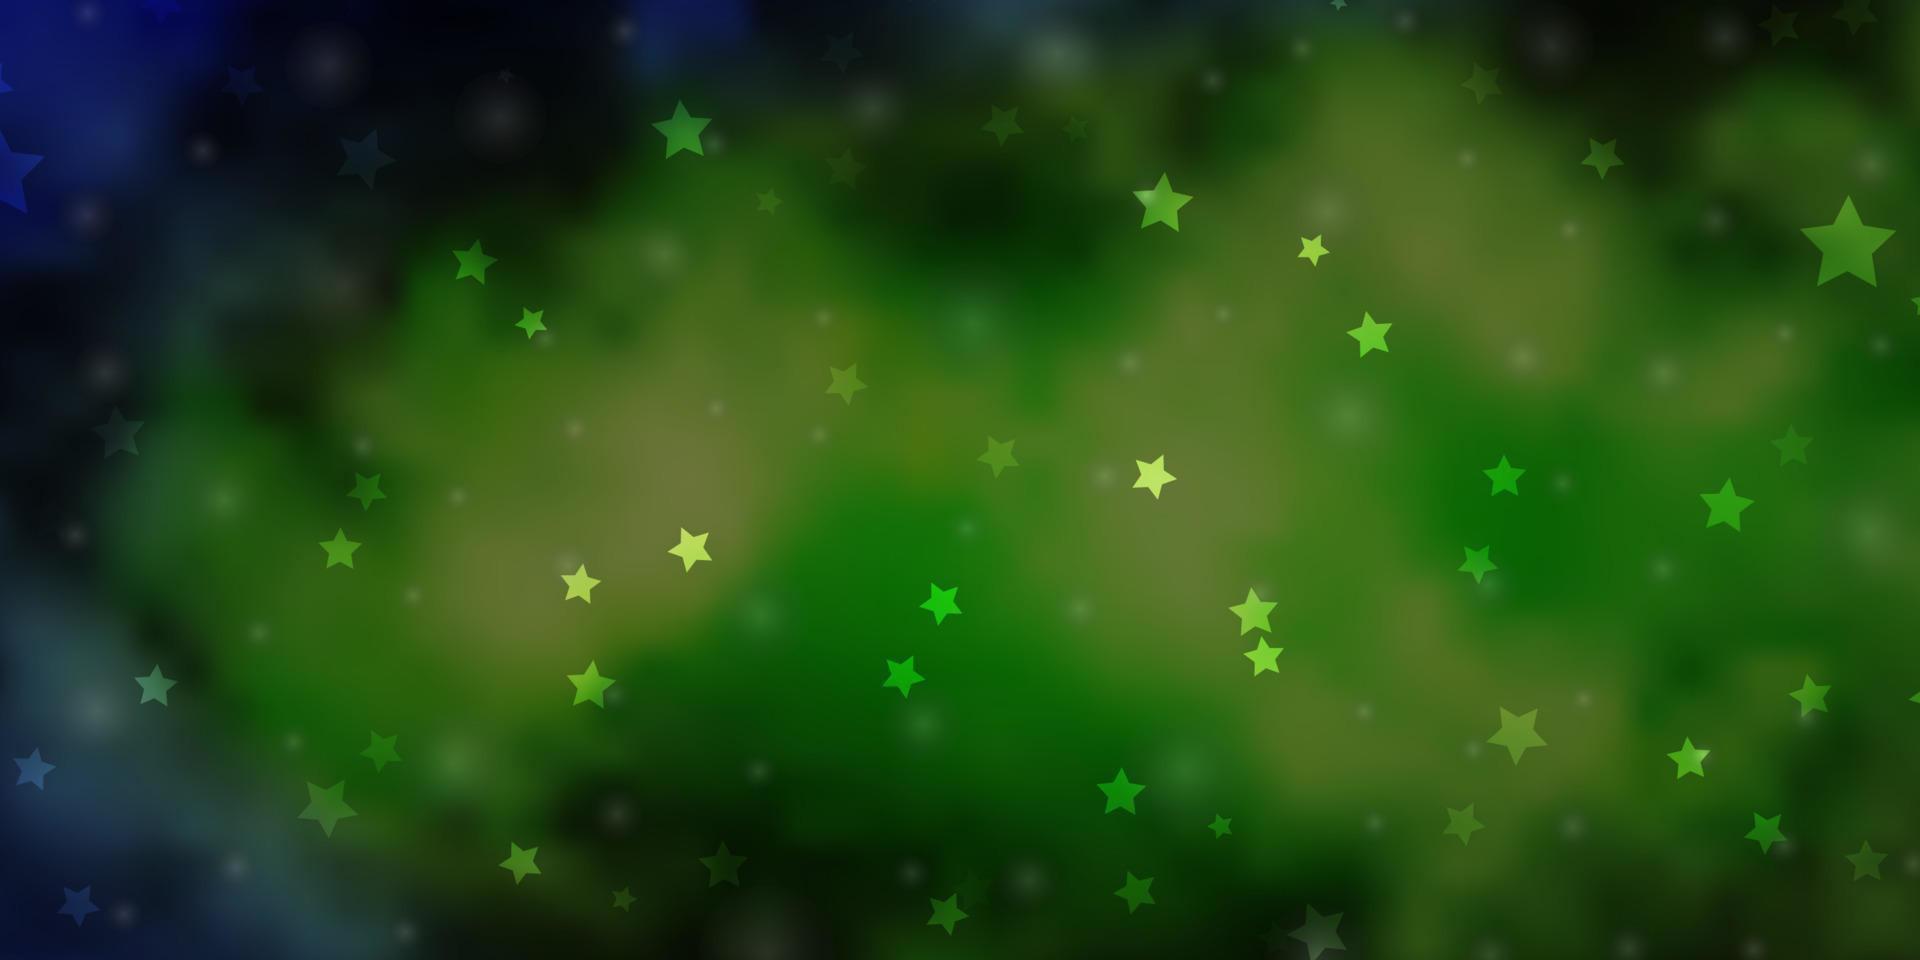 modèle vectoriel bleu clair et vert avec des étoiles au néon.